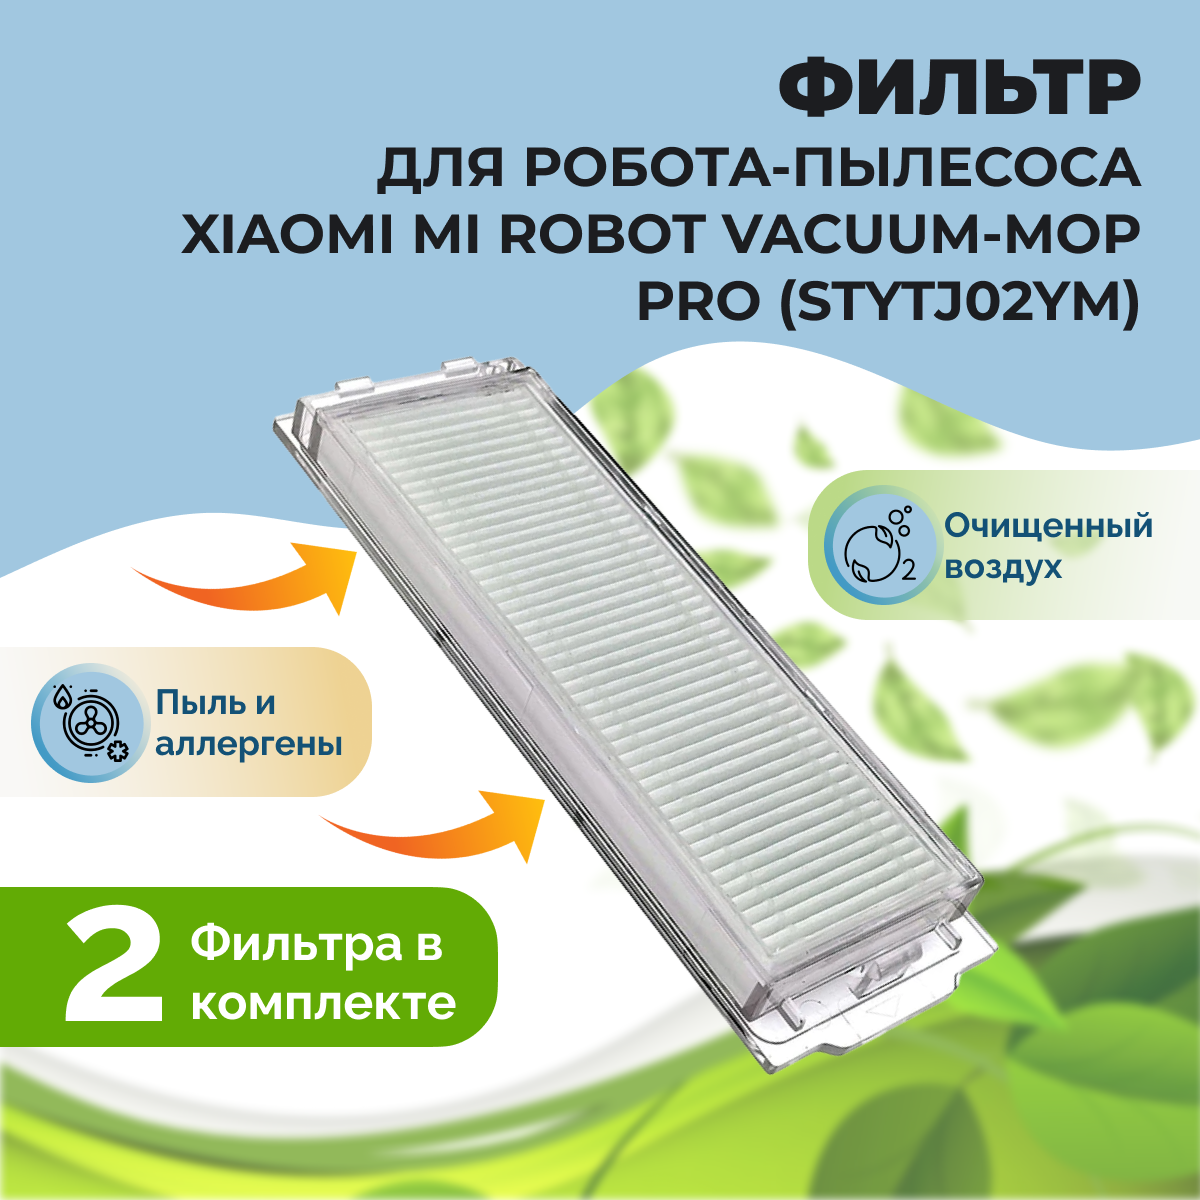 Фильтры для робота-пылесоса Xiaomi Mi Robot Vacuum-Mop Pro (STYTJ02YM), 2 штуки 558129, фото 1